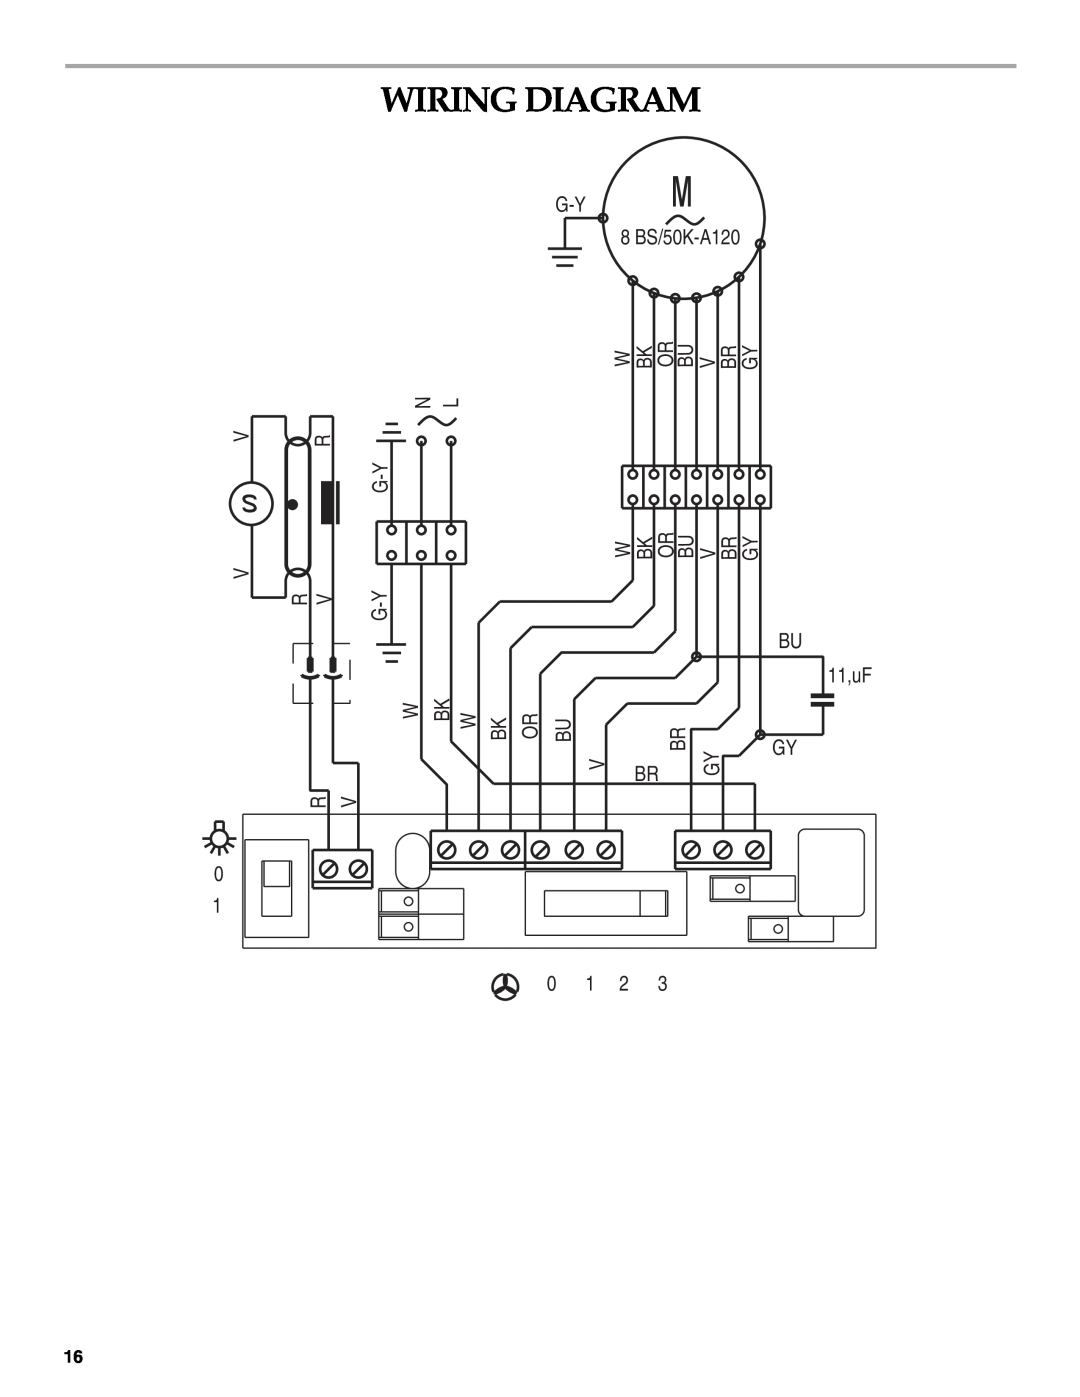 KitchenAid W10267109C installation instructions Wiring Diagram, G-Y 8 BS/50K-A120, BU 11,uF GY, 0 1 2 